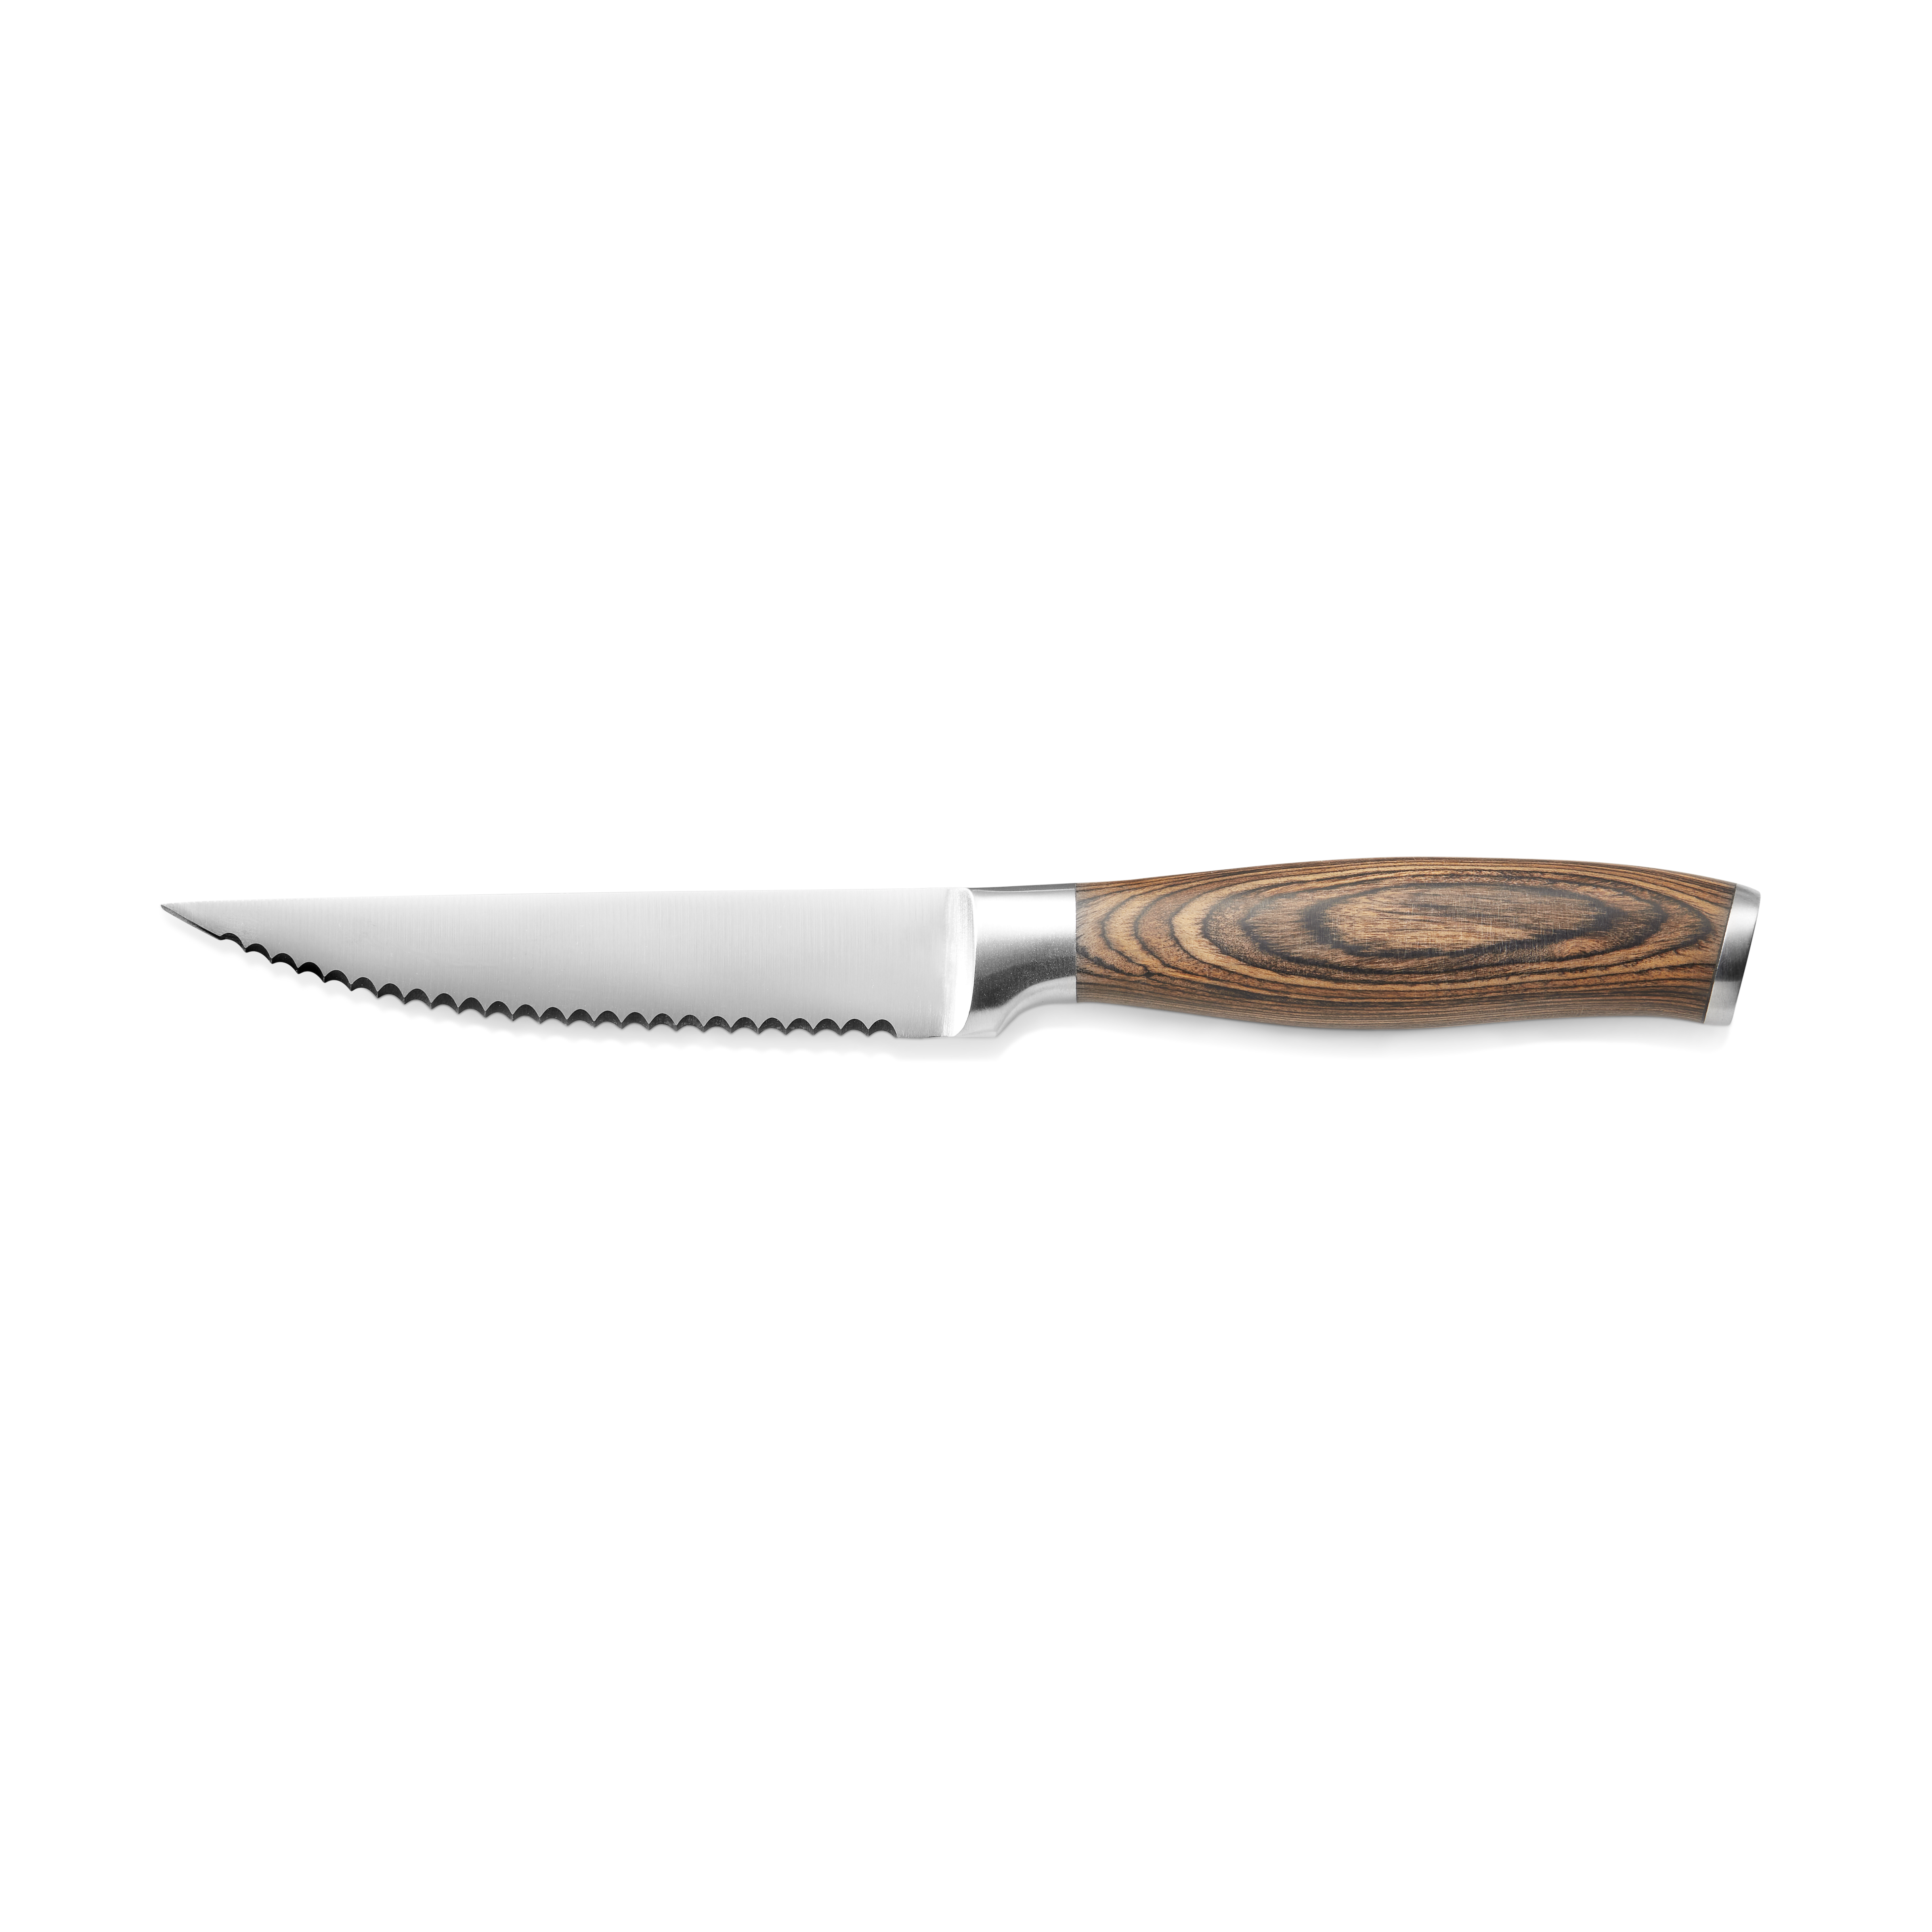 Steakmesser mit Holzgriff, 11,5 cm, Set á 12 Stück, Edelstahl